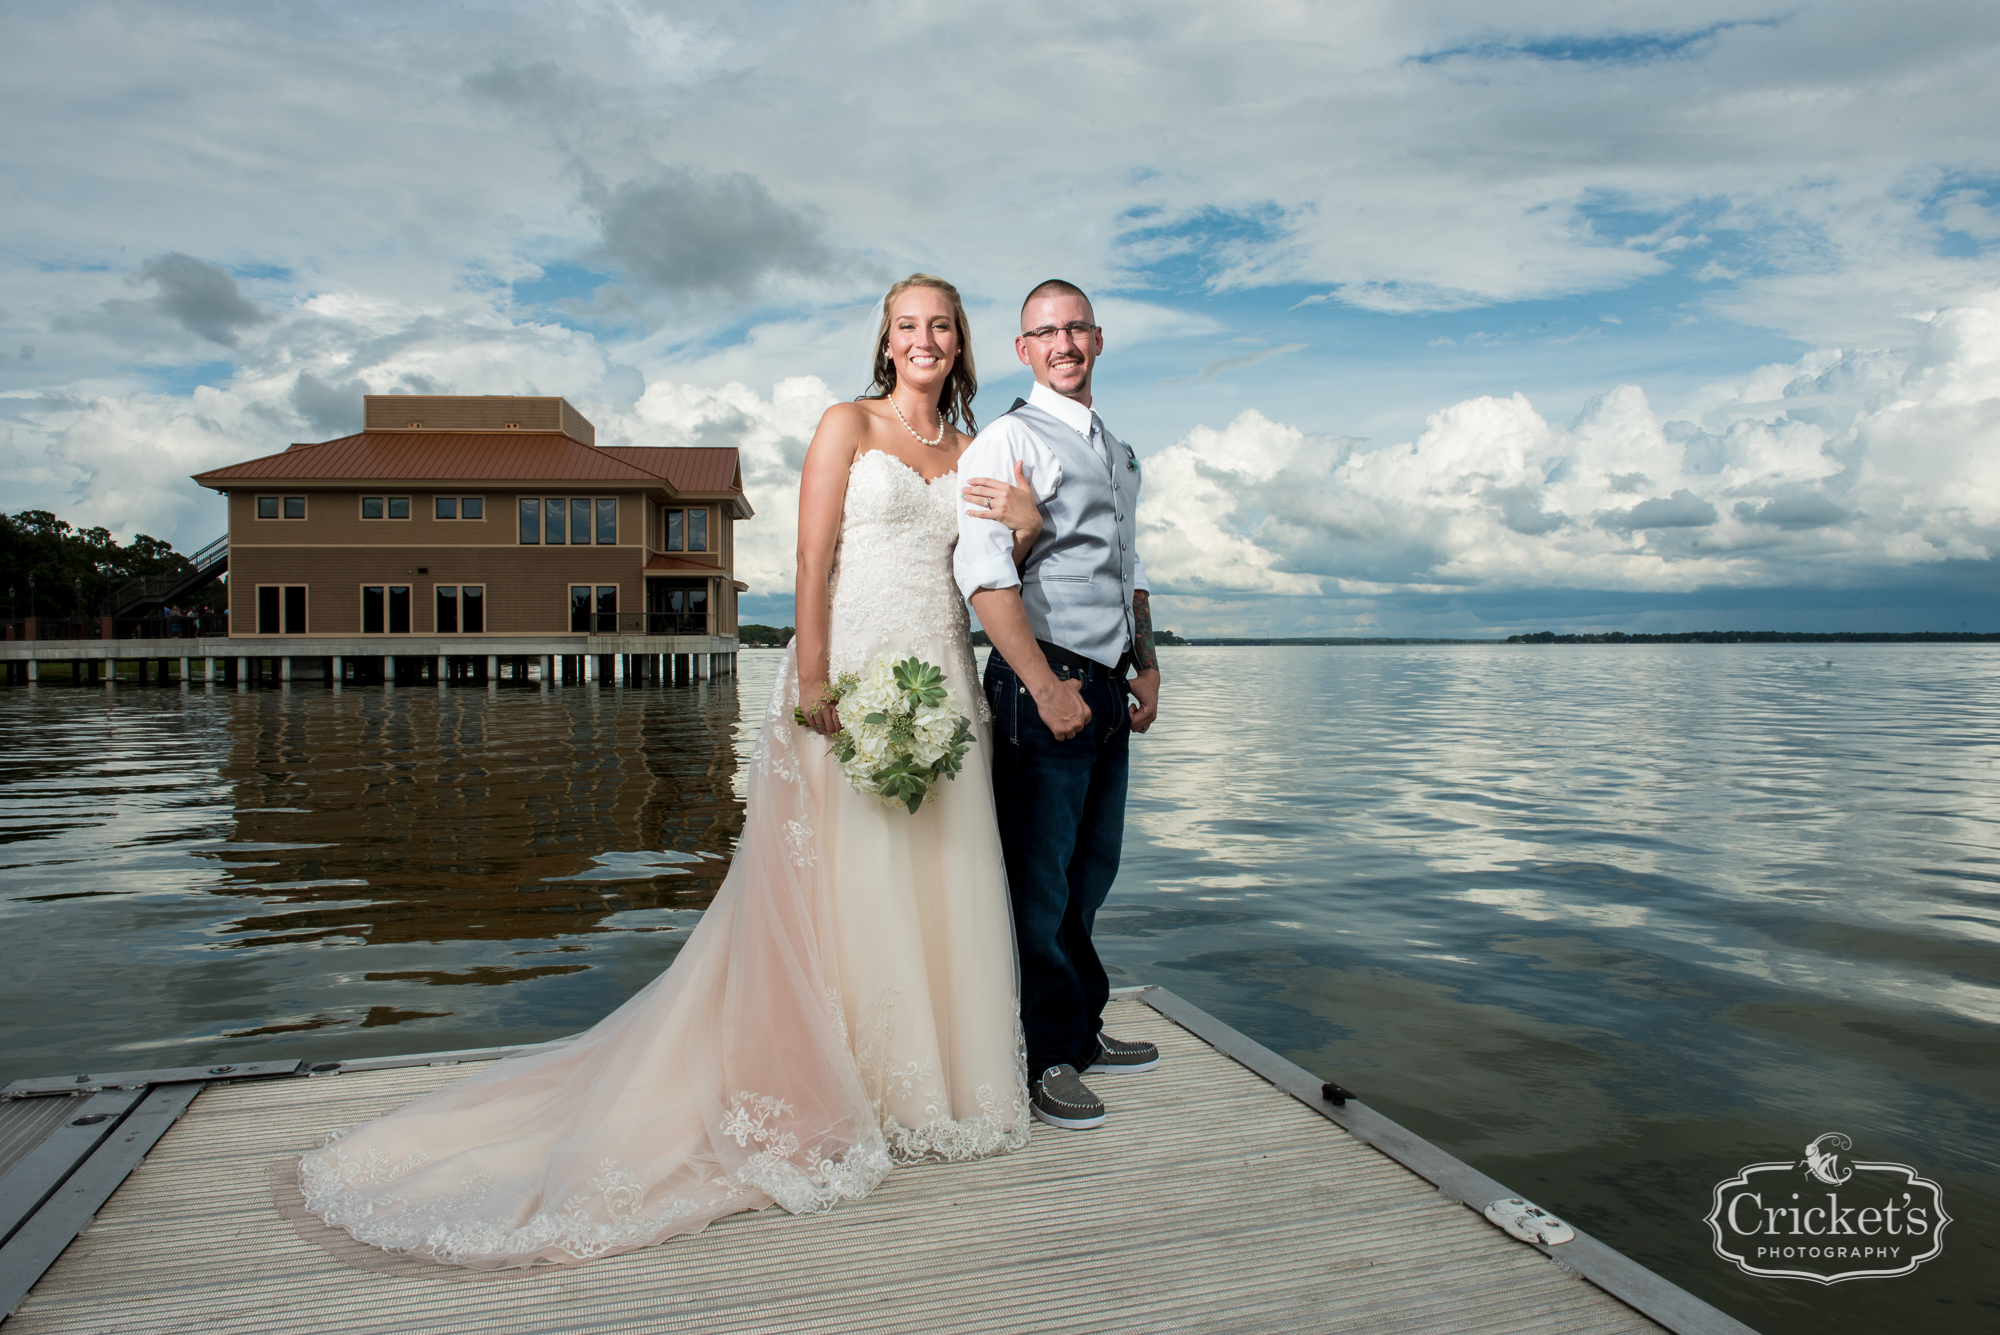 tavares pavilion on the lake wedding photography